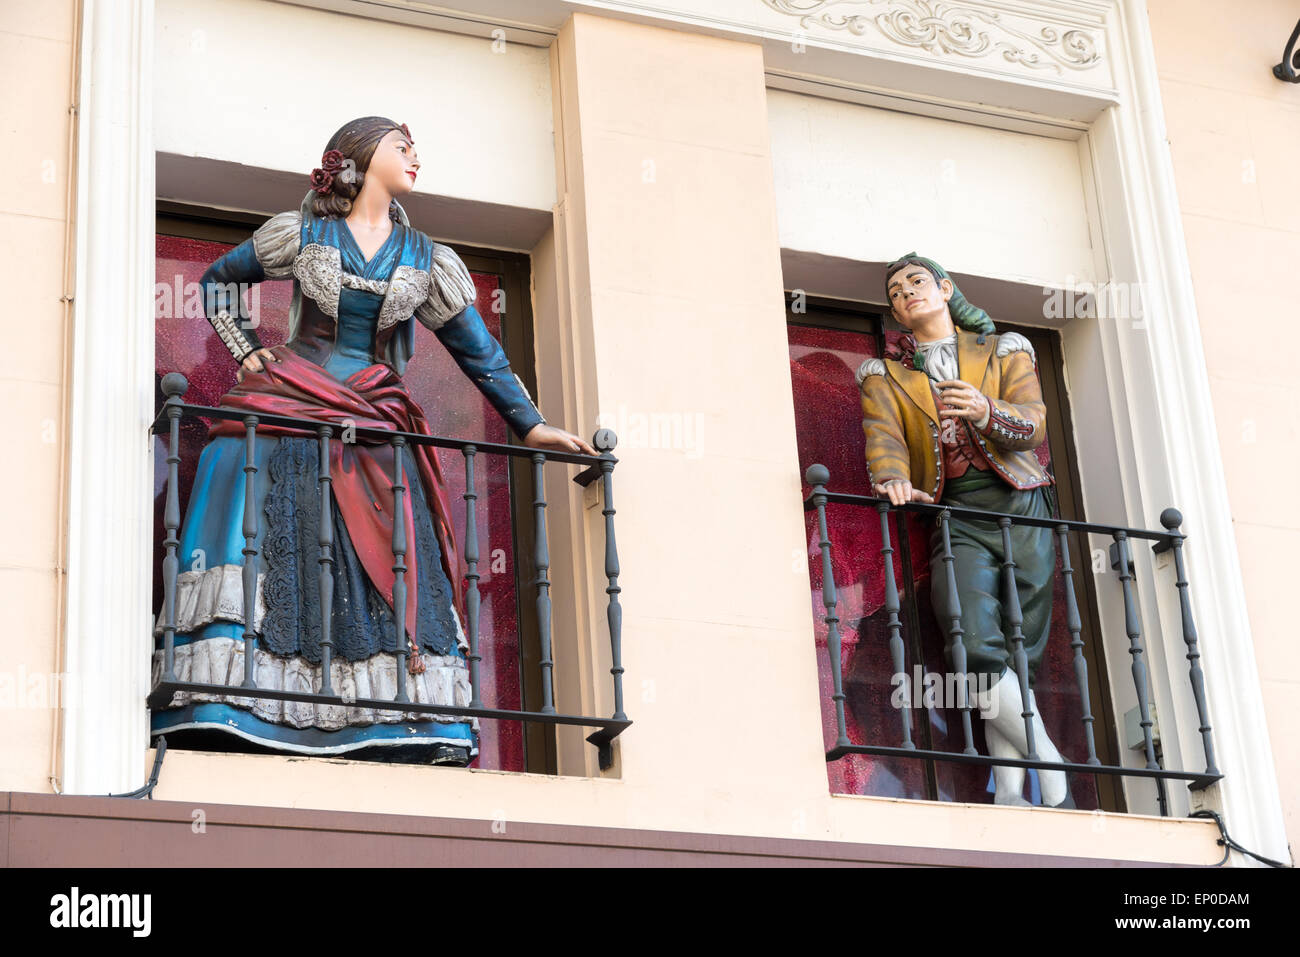 Modèles de personnes au 18e siècle les vêtements sur balcon au-dessus du magasin de souvenirs, Madrid, Espagne Banque D'Images